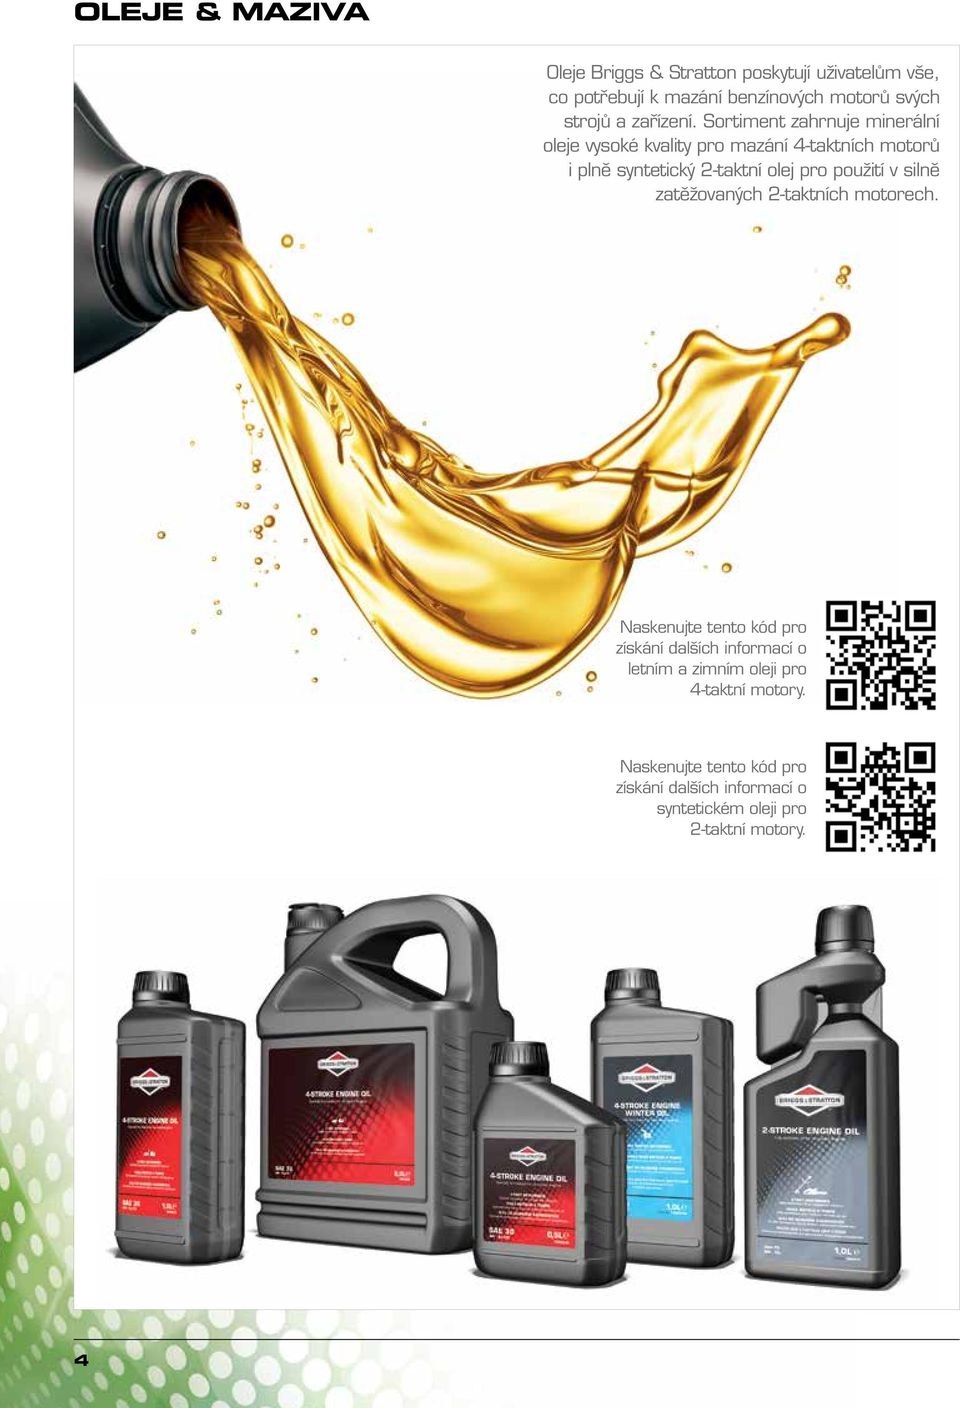 Sortiment zahrnuje minerální oleje vysoké kvality pro mazání 4-taktních motorů i plně syntetický 2-taktní olej pro